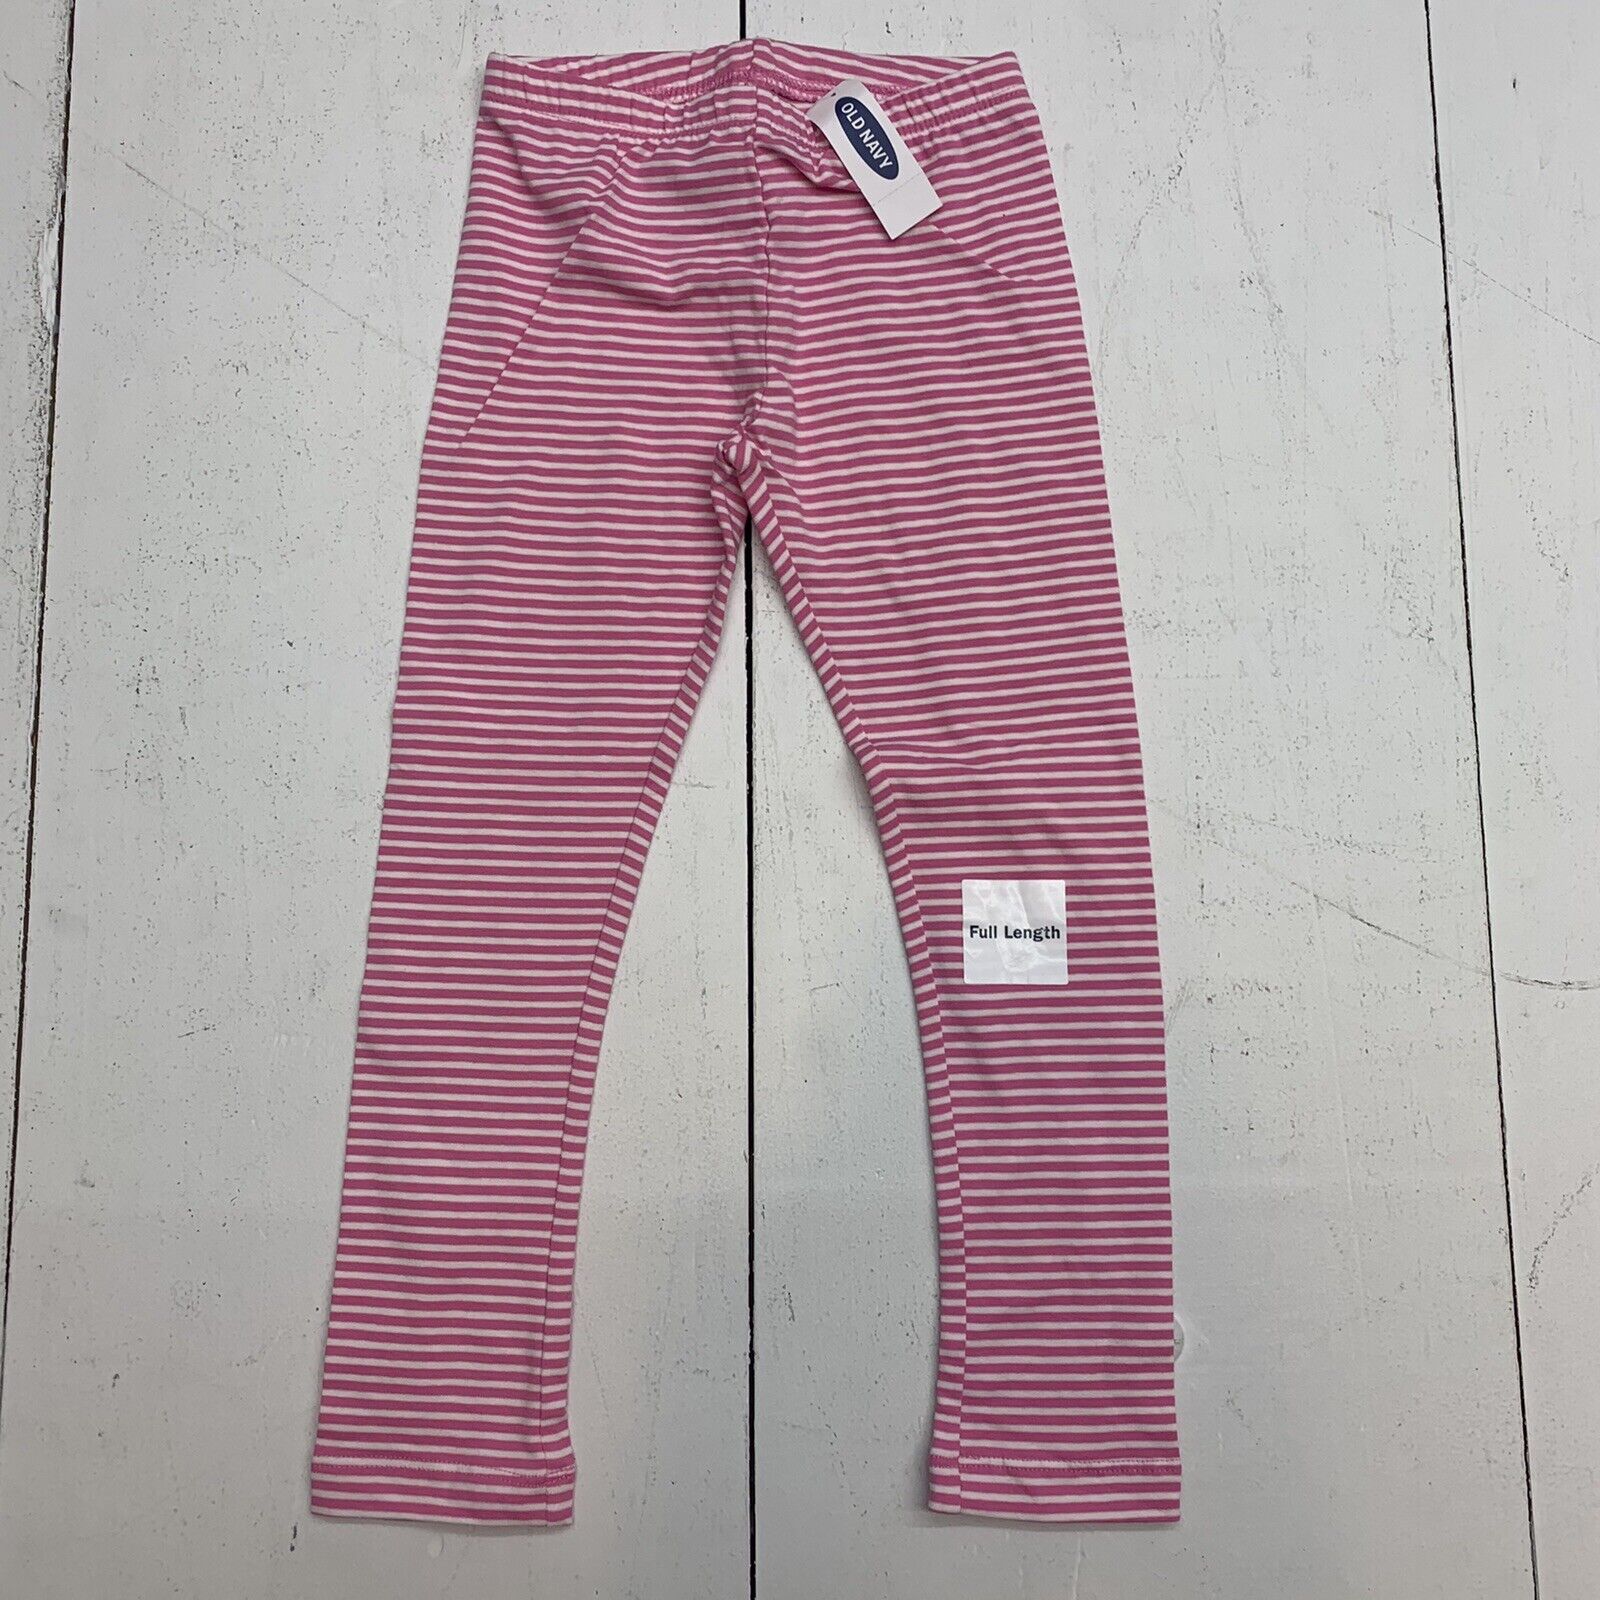 Old Navy Toddler Girls Pink Striped Leggings Size 5T - beyond exchange